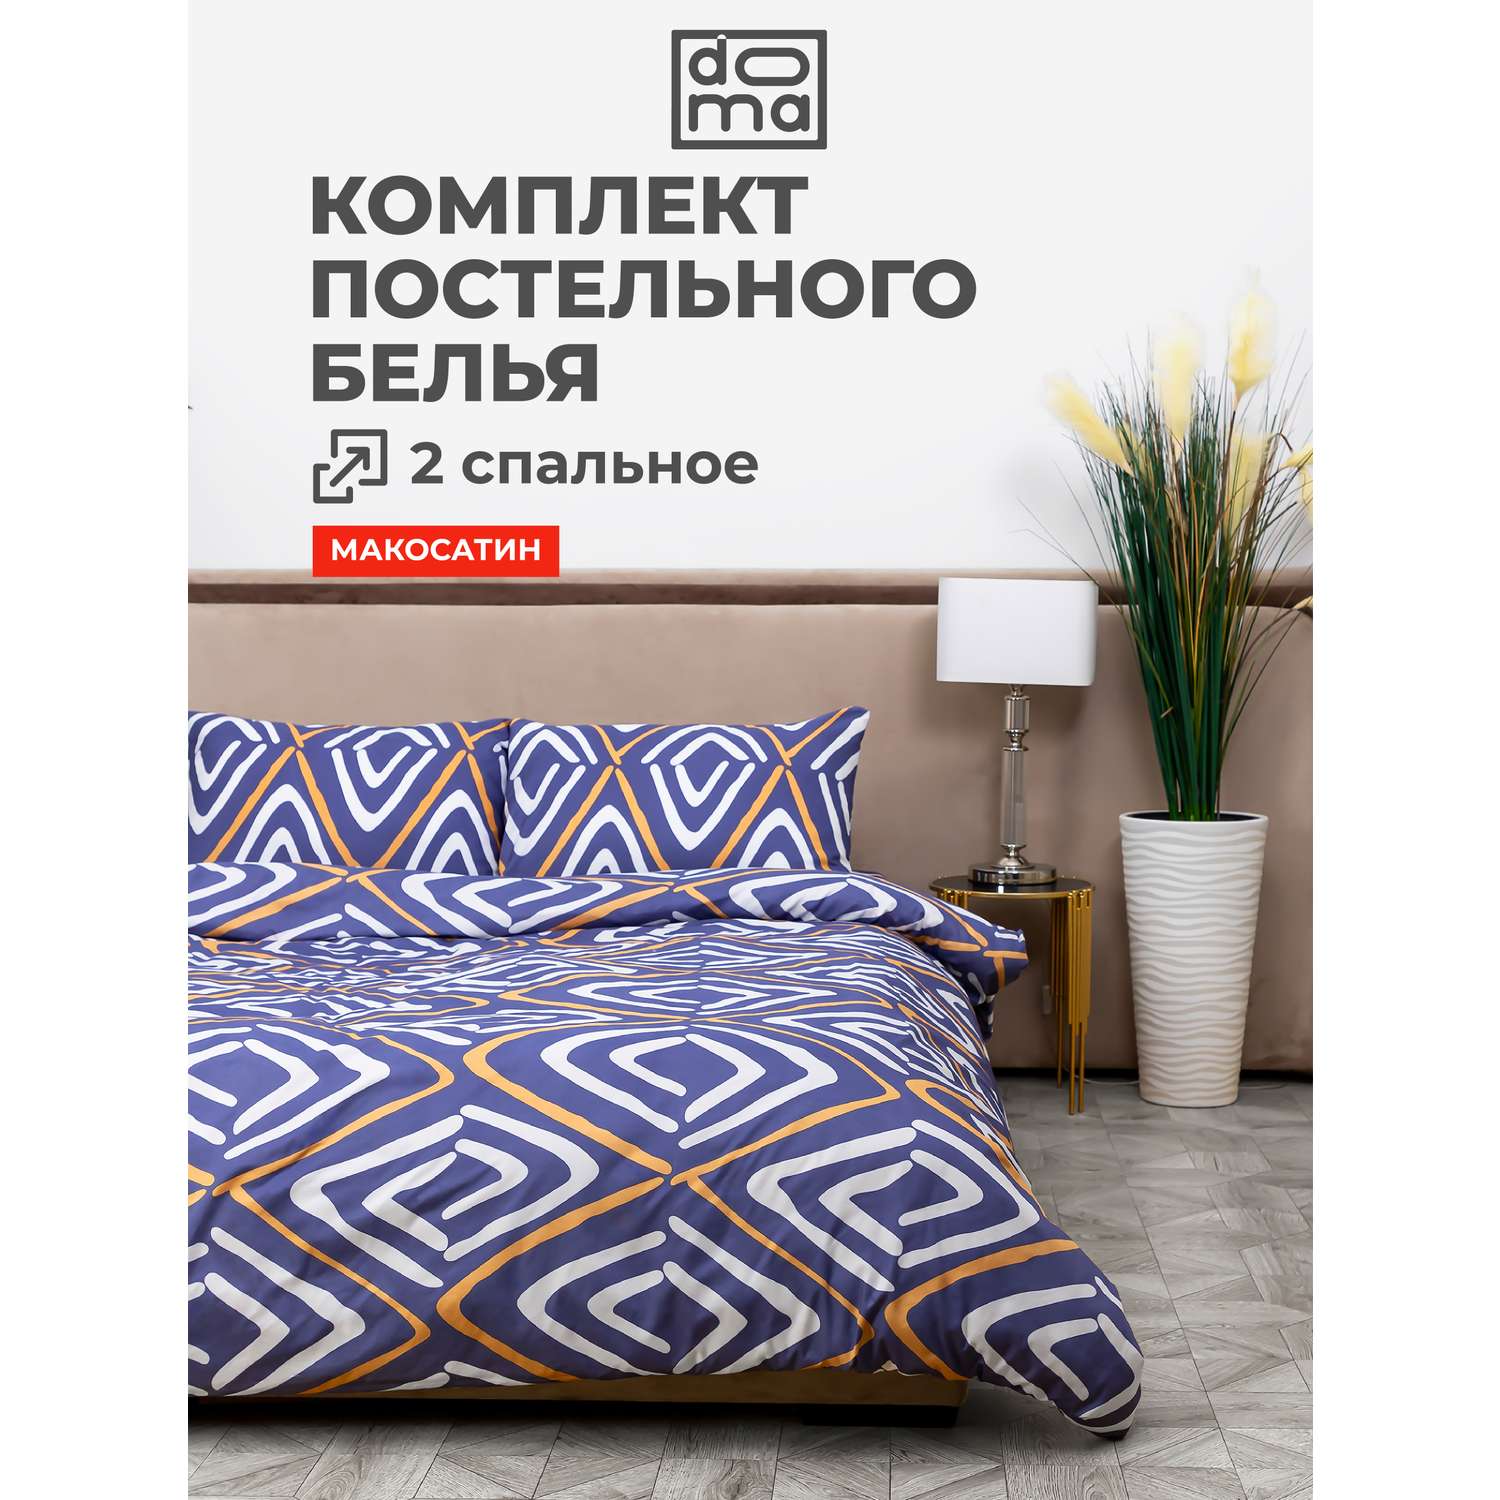 Комплект постельного белья Doma 2 спальное Avacha микрофибра - фото 1